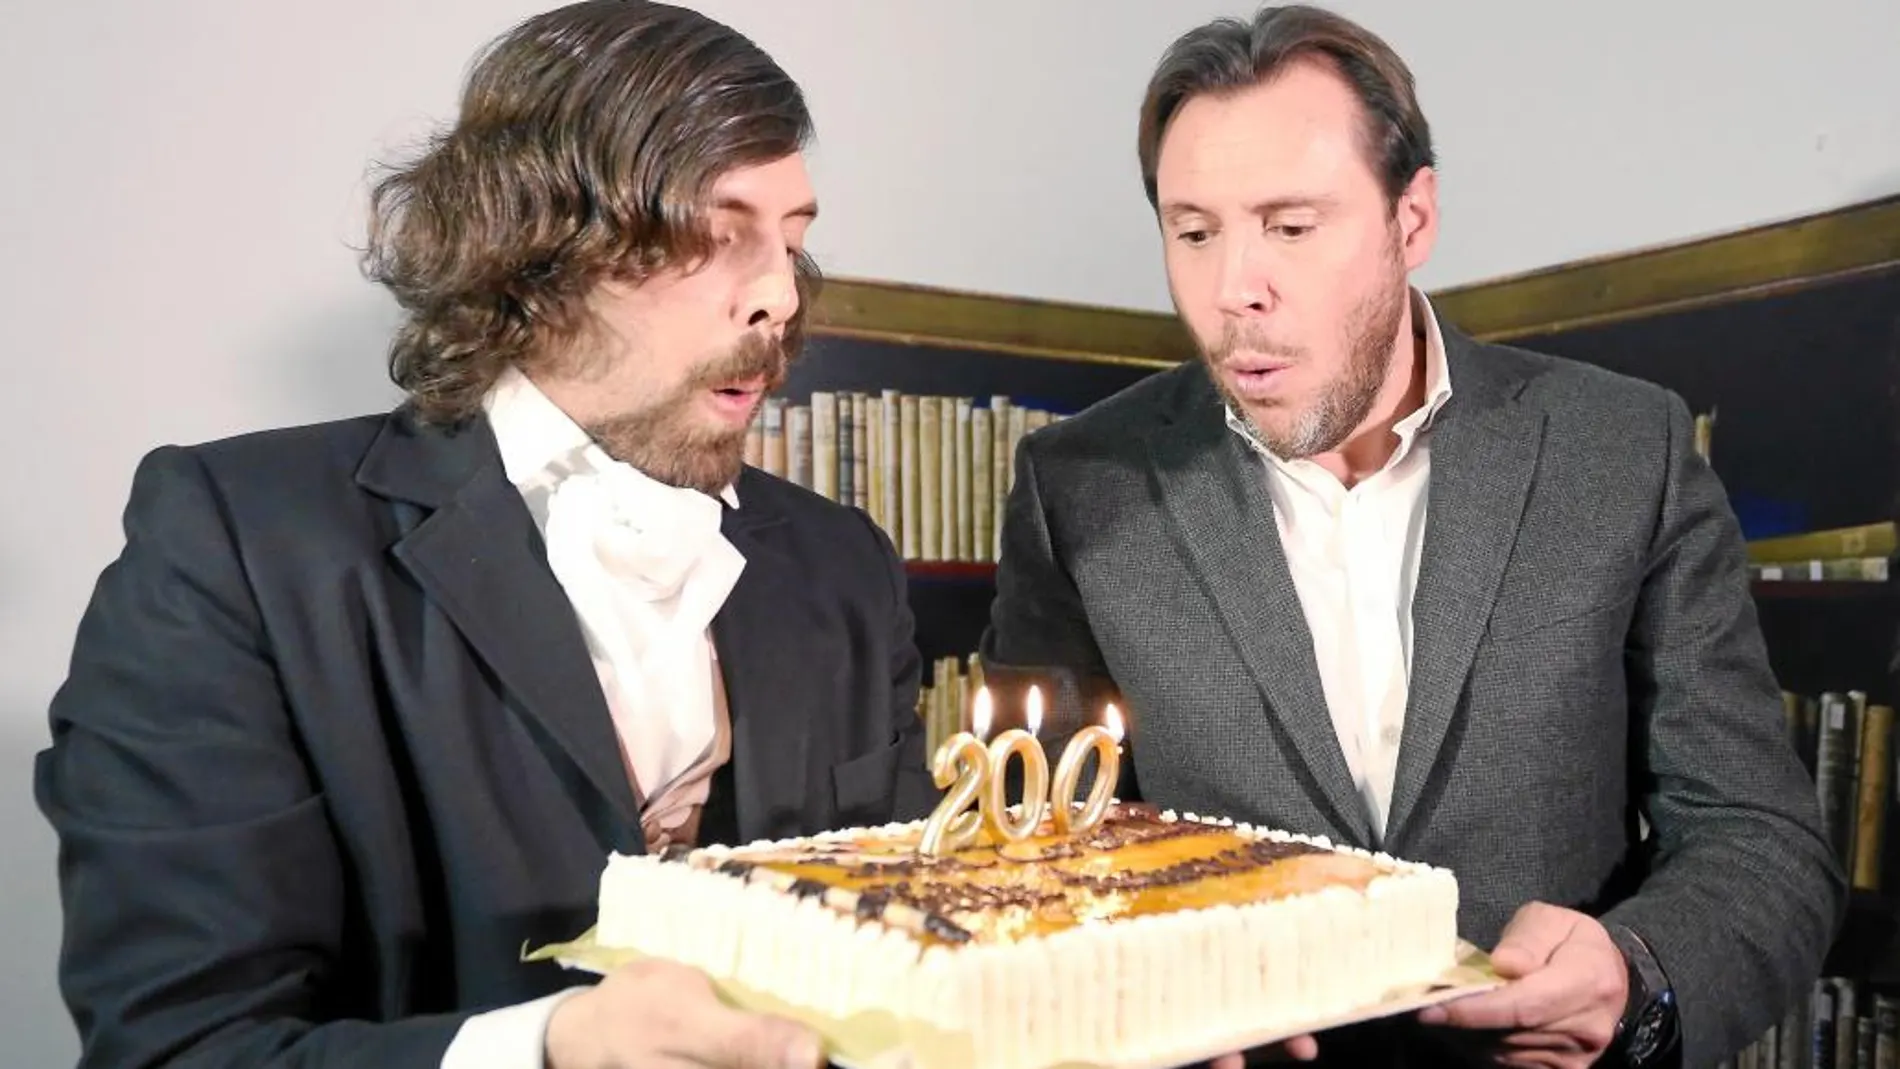 El alcalde de Valladolid, Óscar Puente, sopla las velas de una tarta junto a un actor caracterizado de José Zorrilla.